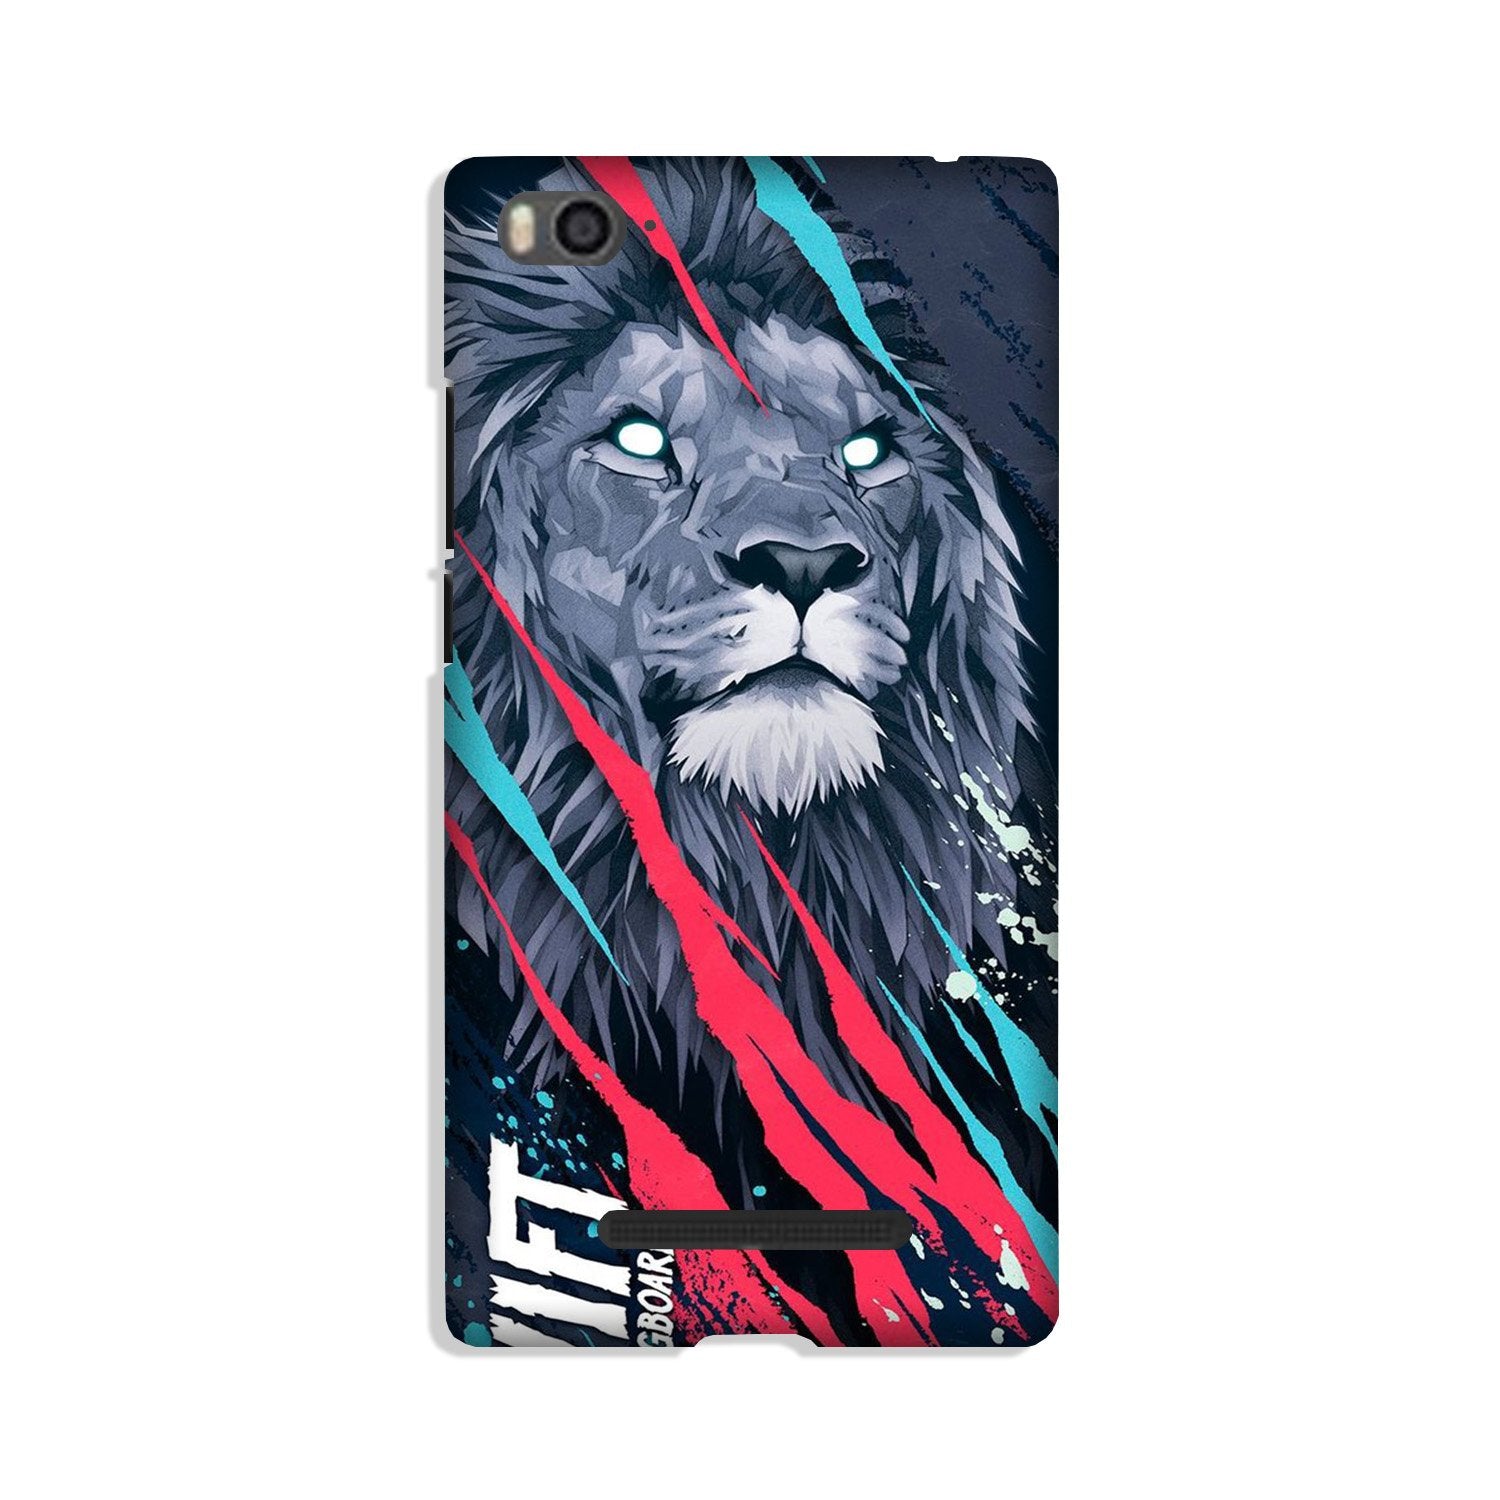 Lion Case for Xiaomi Redmi 5A (Design No. 278)